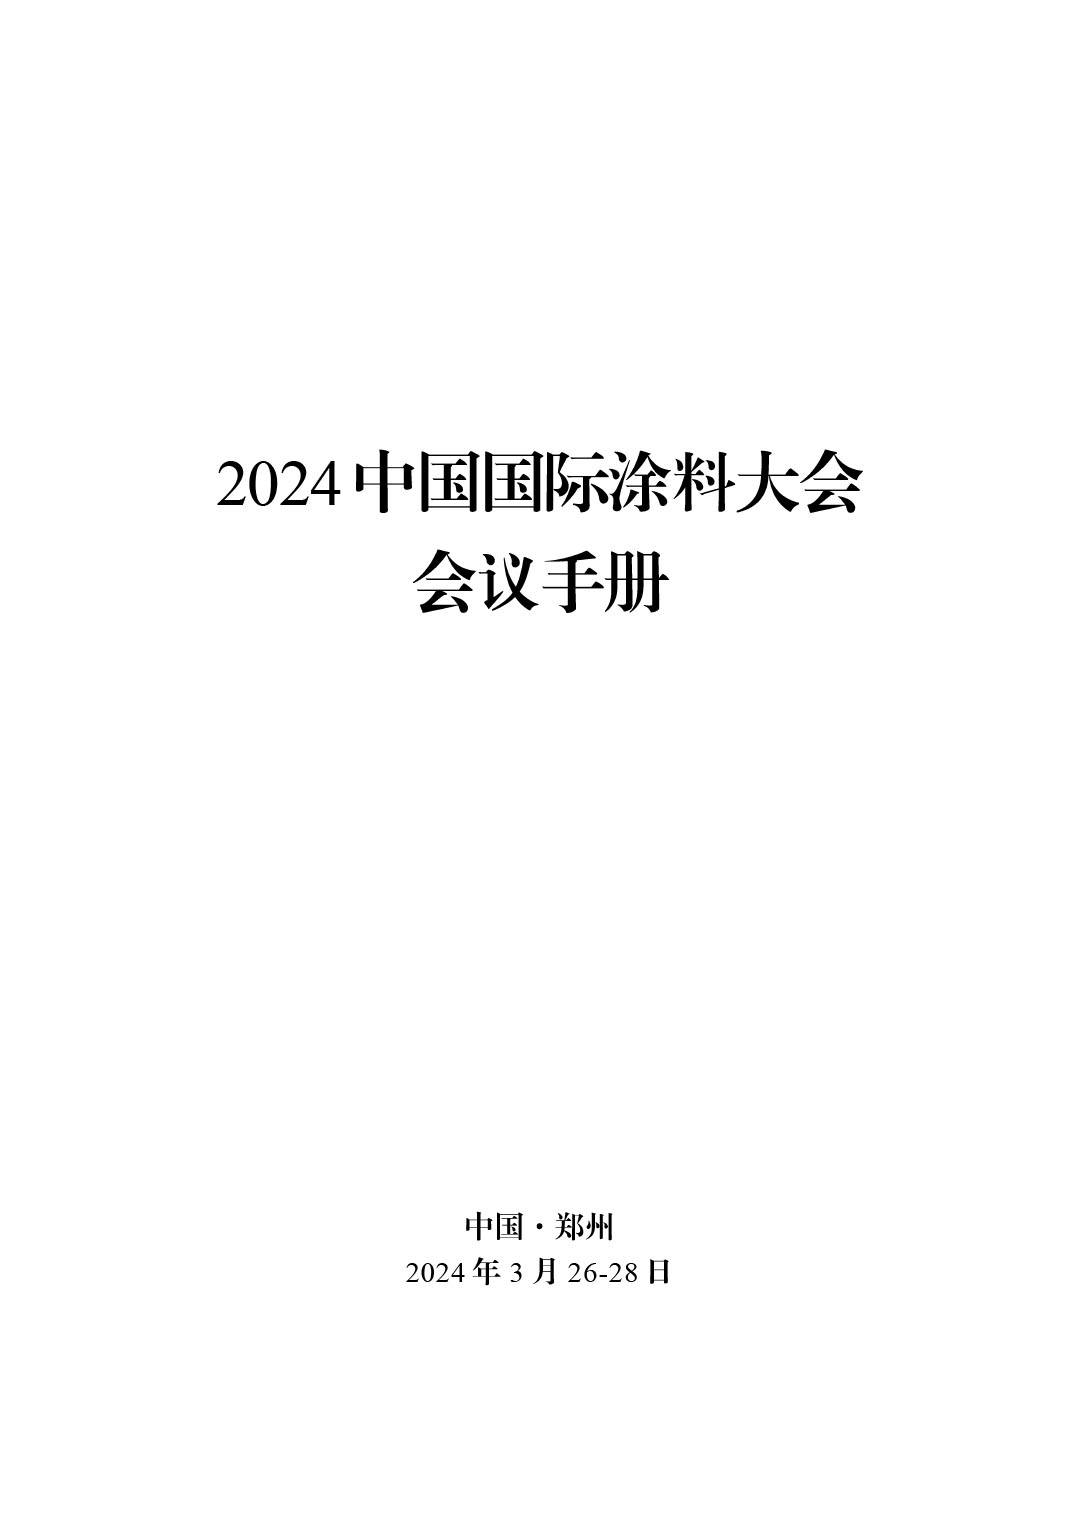 2024中国国际涂料大会会议手册20240325(2) -4-1